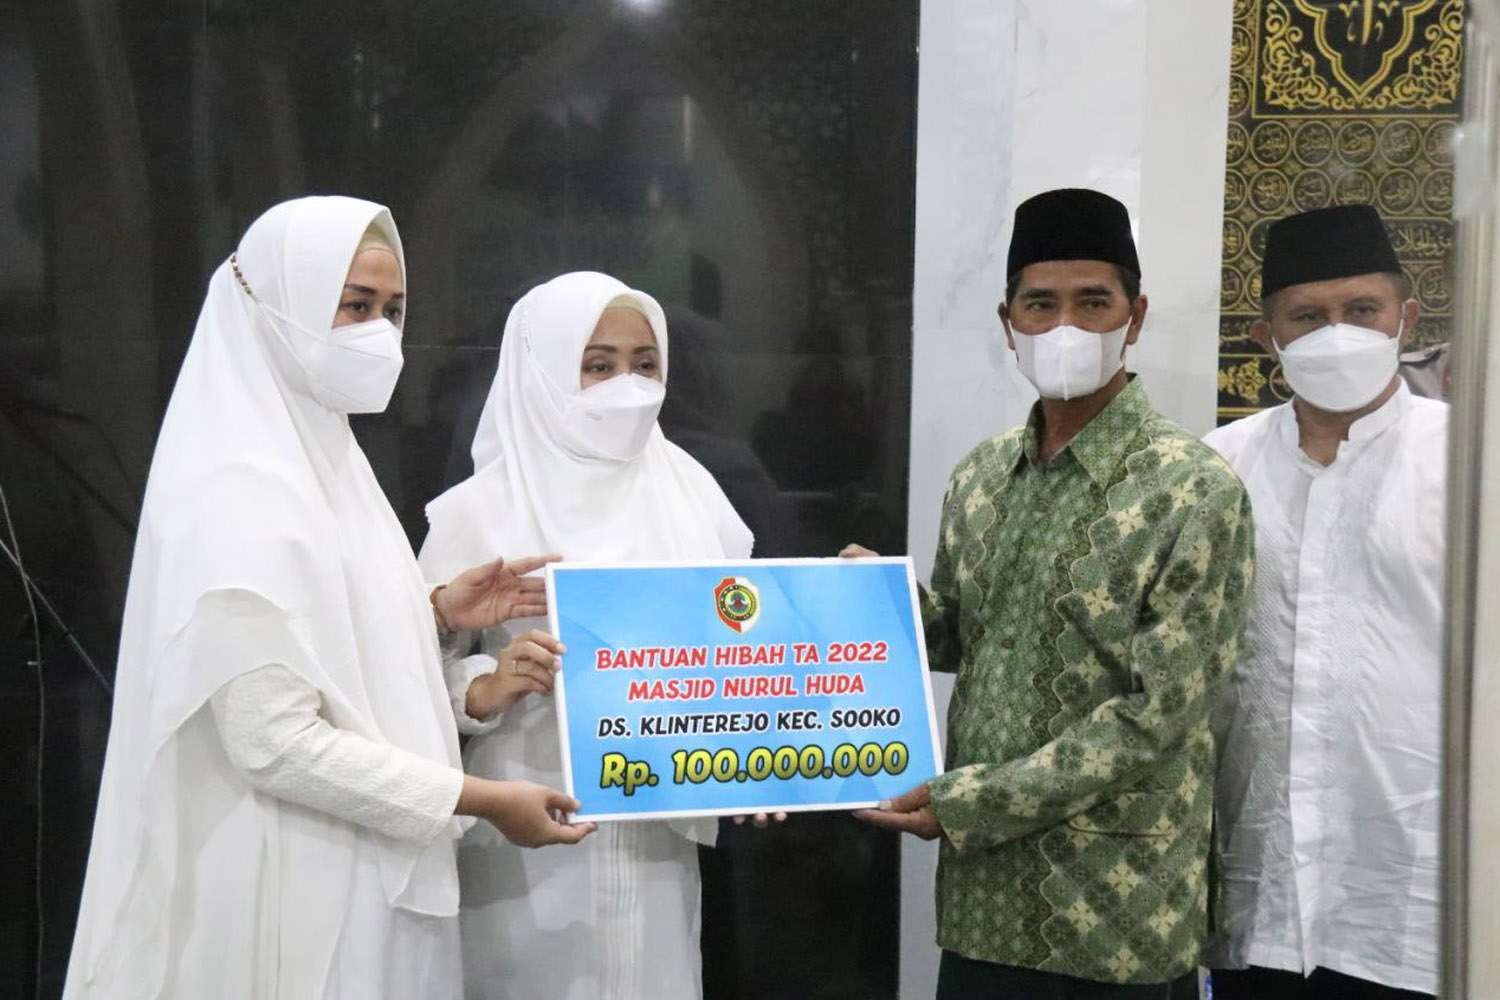 Selain berjemaah salat tarawih, Bupati Ikfina juga menyerahkan dana hibah untuk bantuan pembangunan masjid senilai Rp 100 juta. (Foto: Diskominfo Kabupaten Mojokerto)